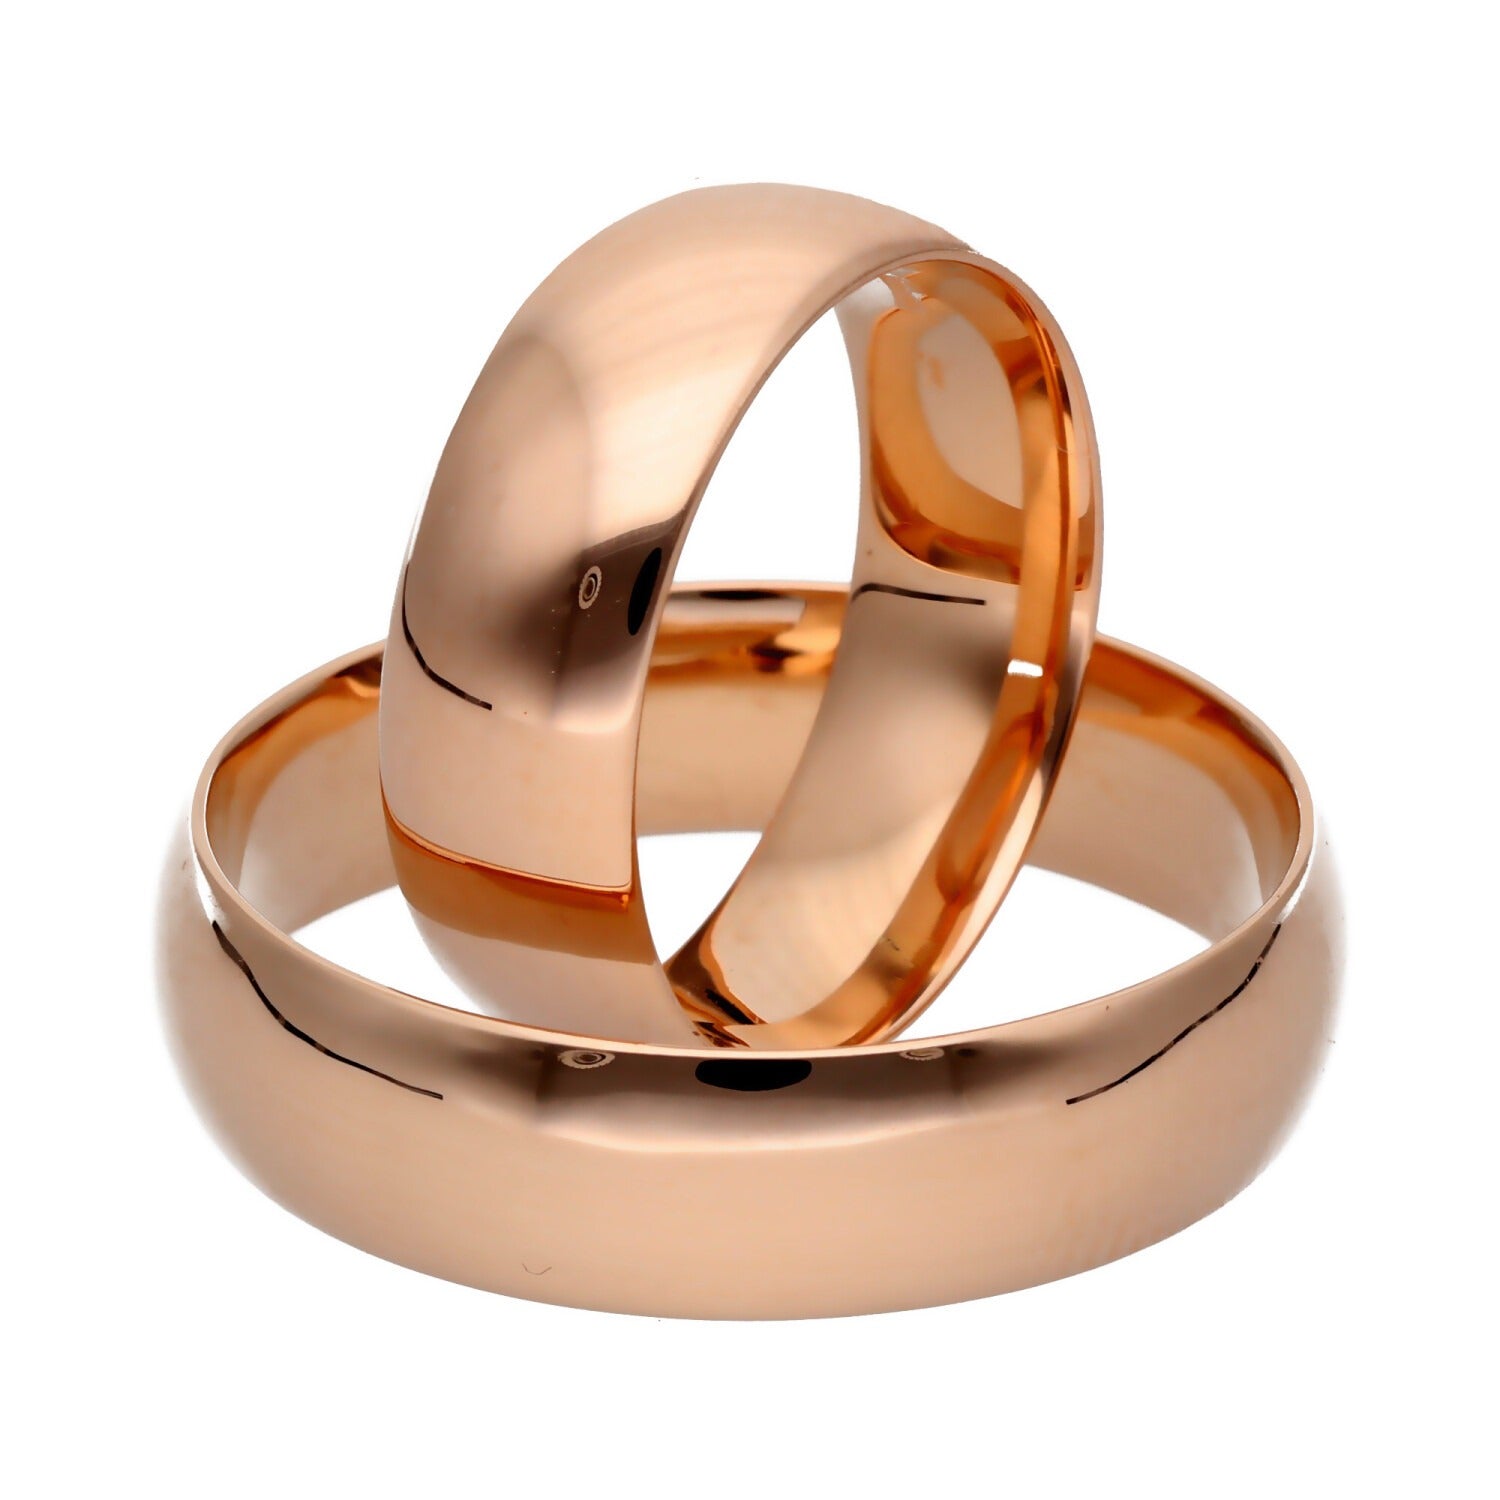 Klasikiniai vestuviniai žiedai 6mm pločio su komfortu vestuviniaiziedai.lt